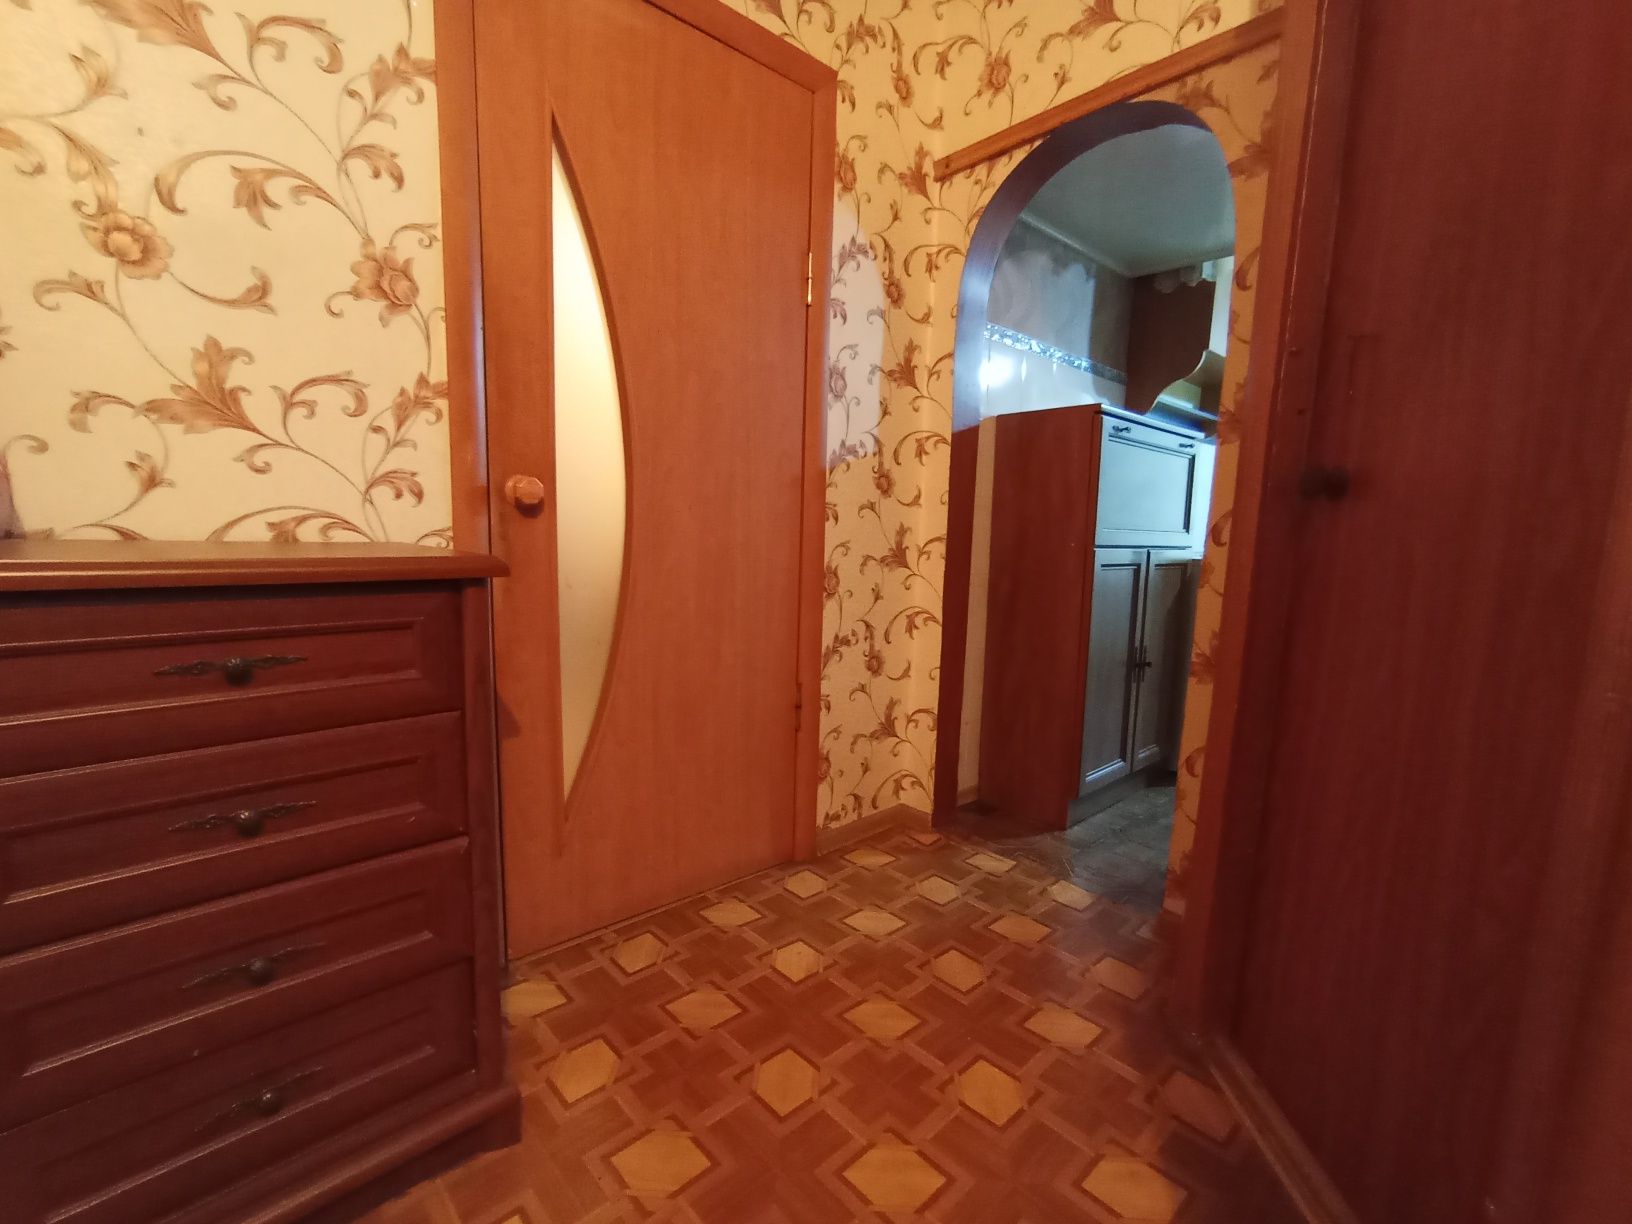 Продам квартиру в центре Беляевки,Одесская обл